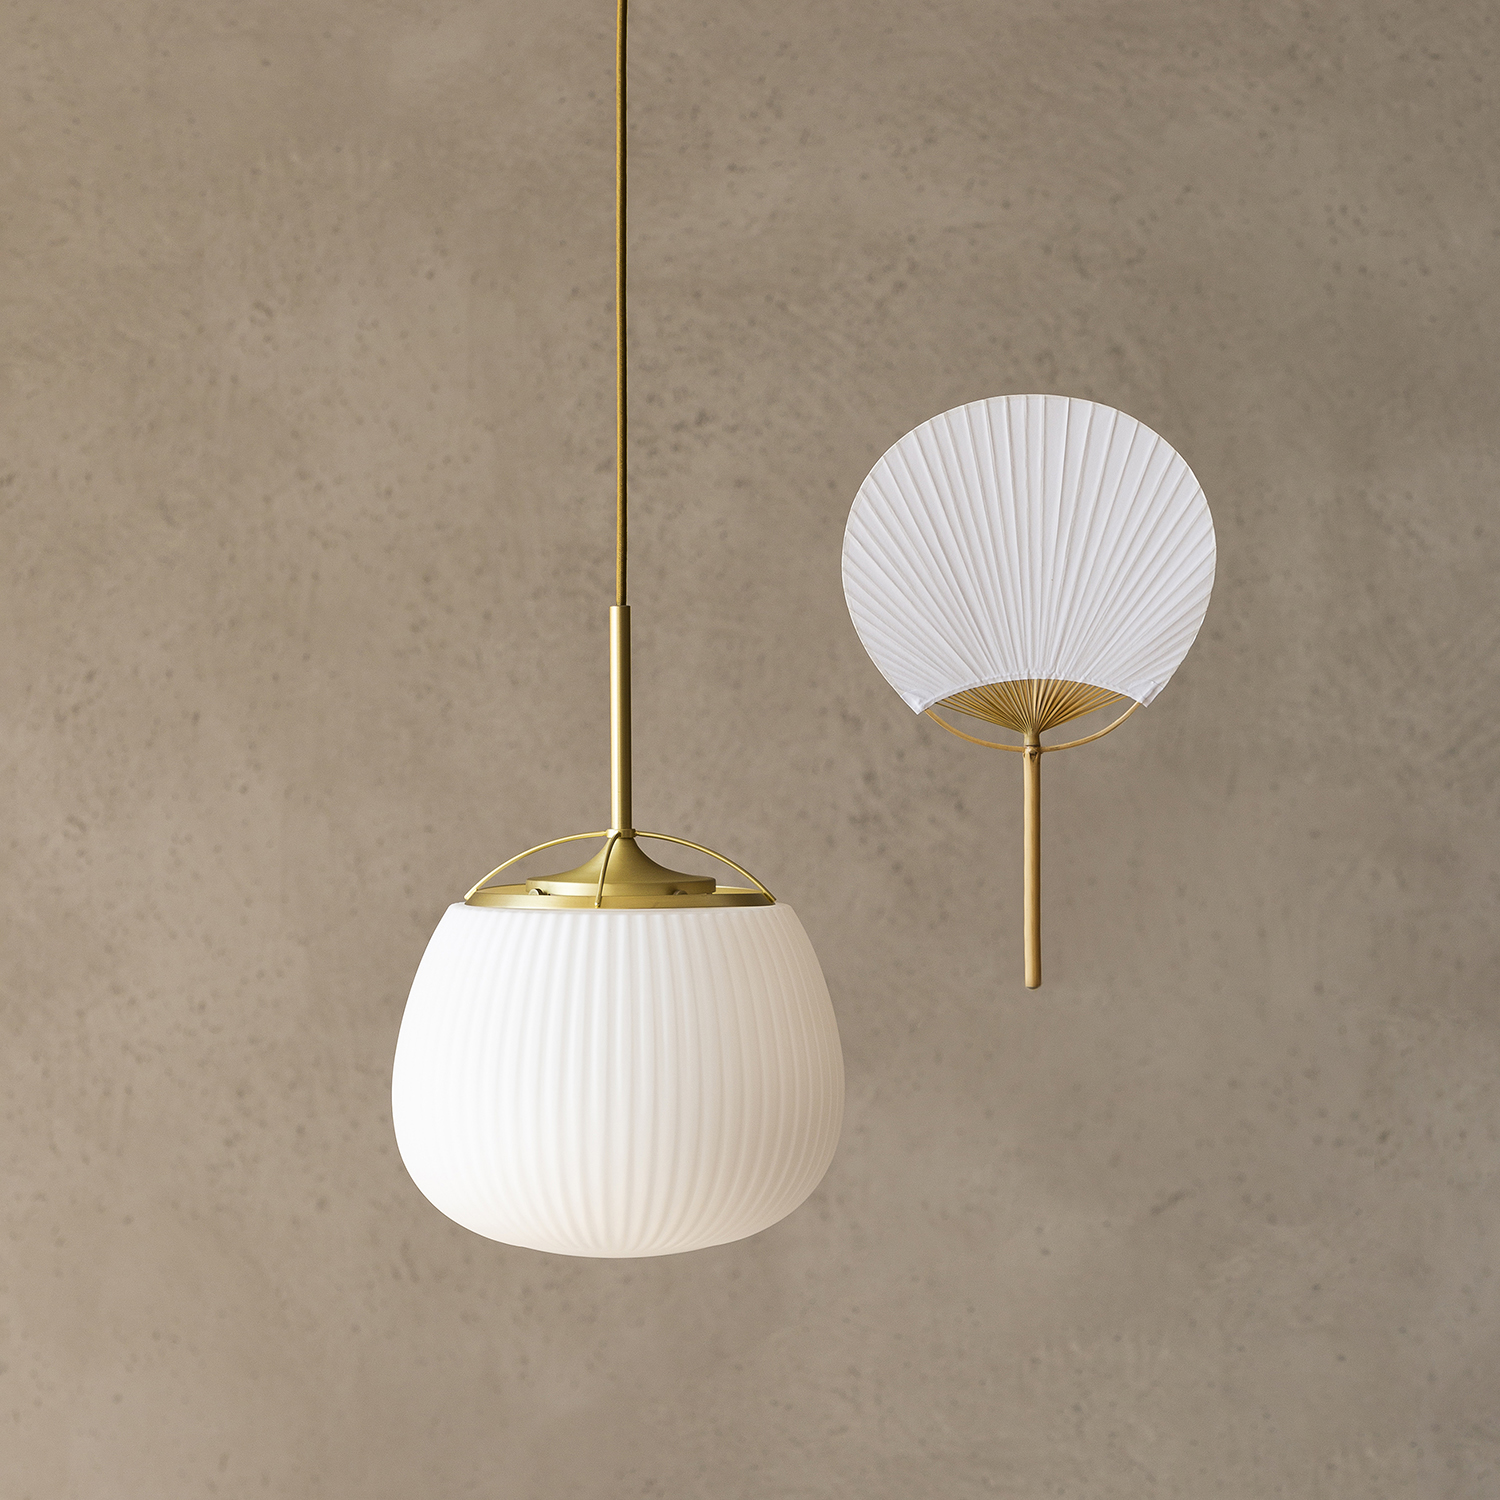 Ogi Lamp, mẫu đèn thả trần tuyệt đẹp lấy ý tưởng từ hình ảnh chiếc quạt giấy Trung Hoa - Ảnh 5